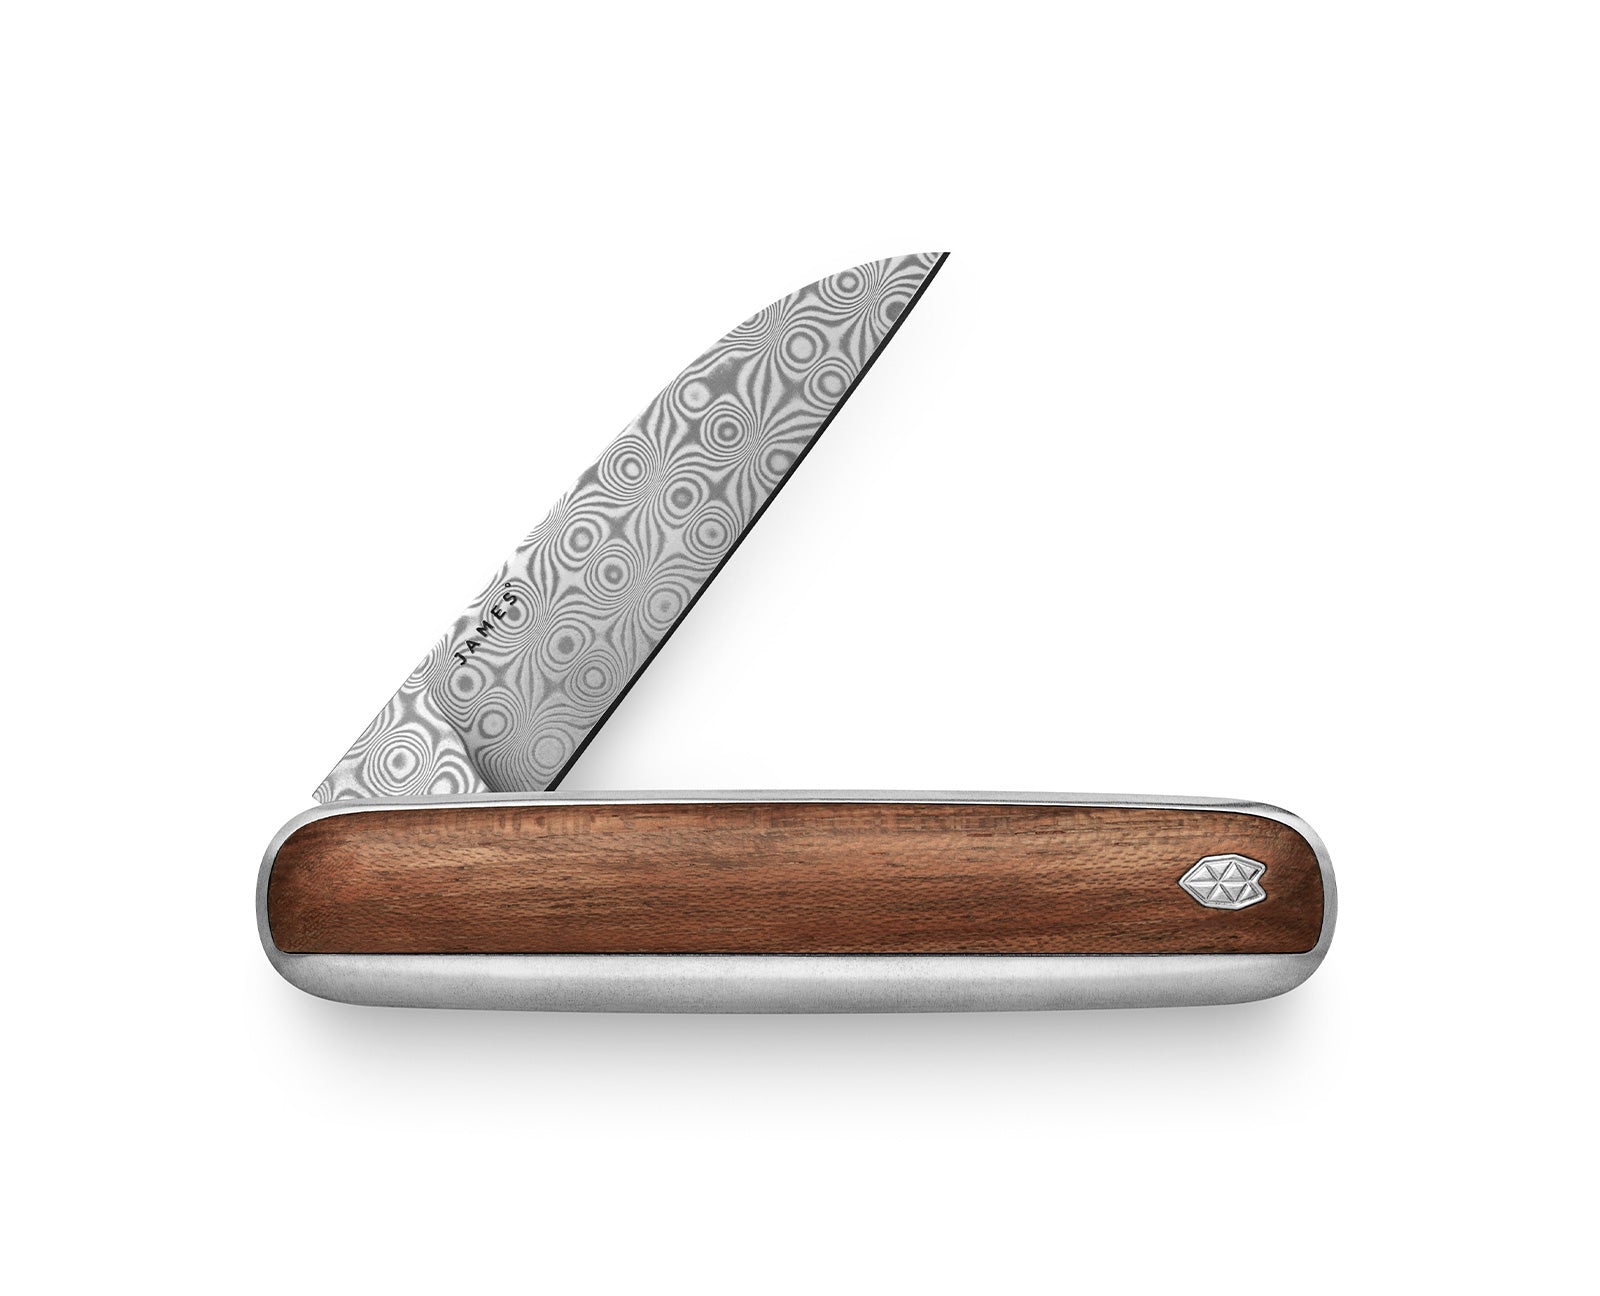 Fellow Aubergine Awaken The Pike - Vintage Inspired Pocket Knife | The James Brand